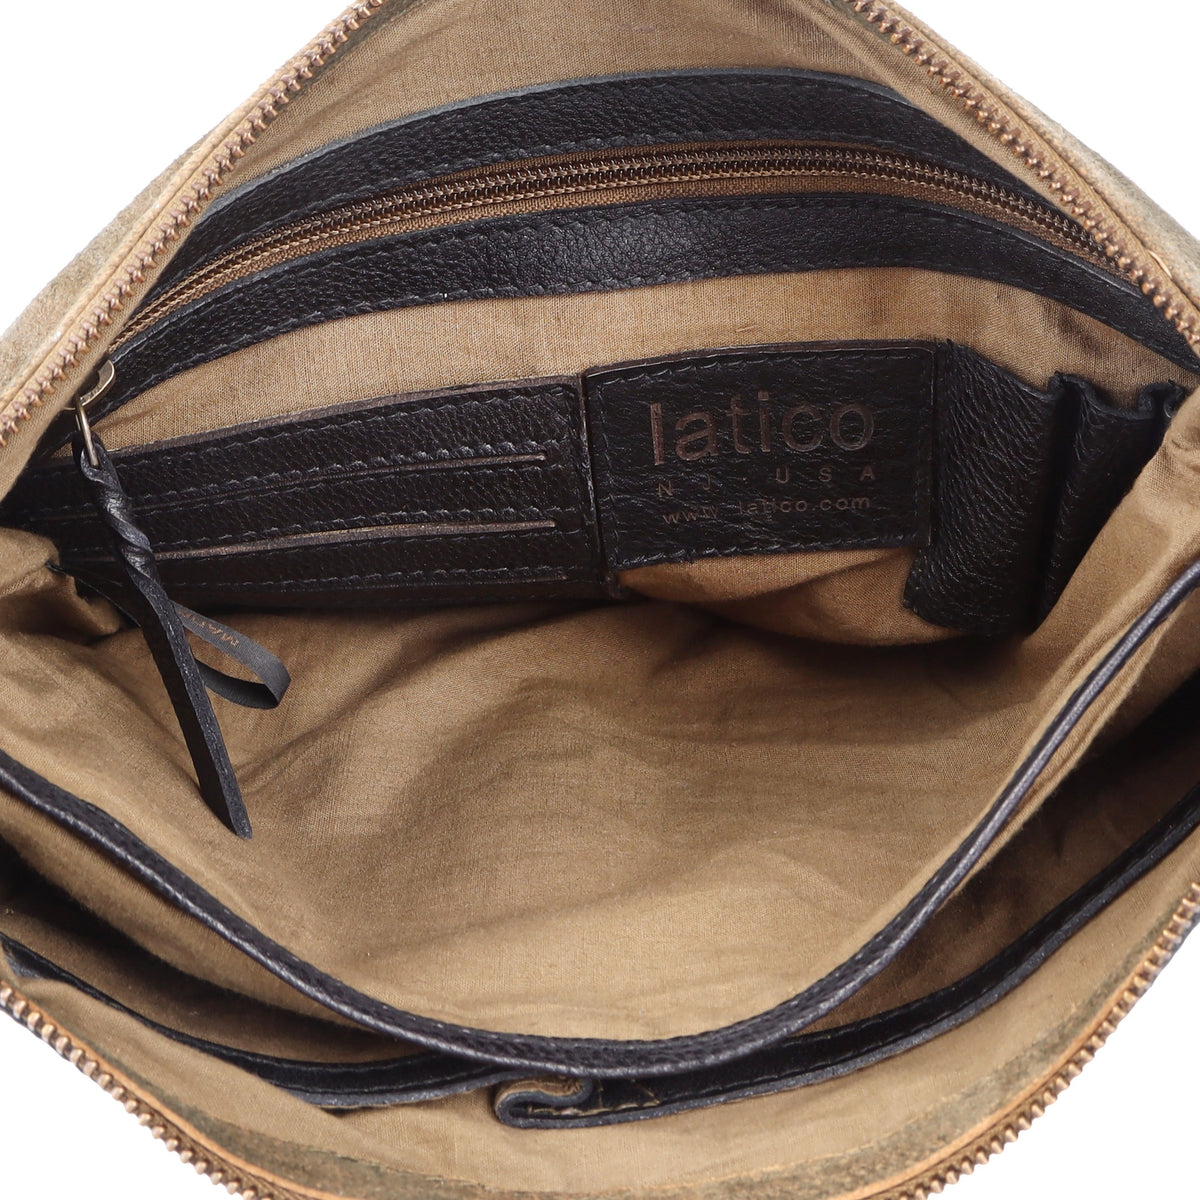 Gypsy Leather Bag